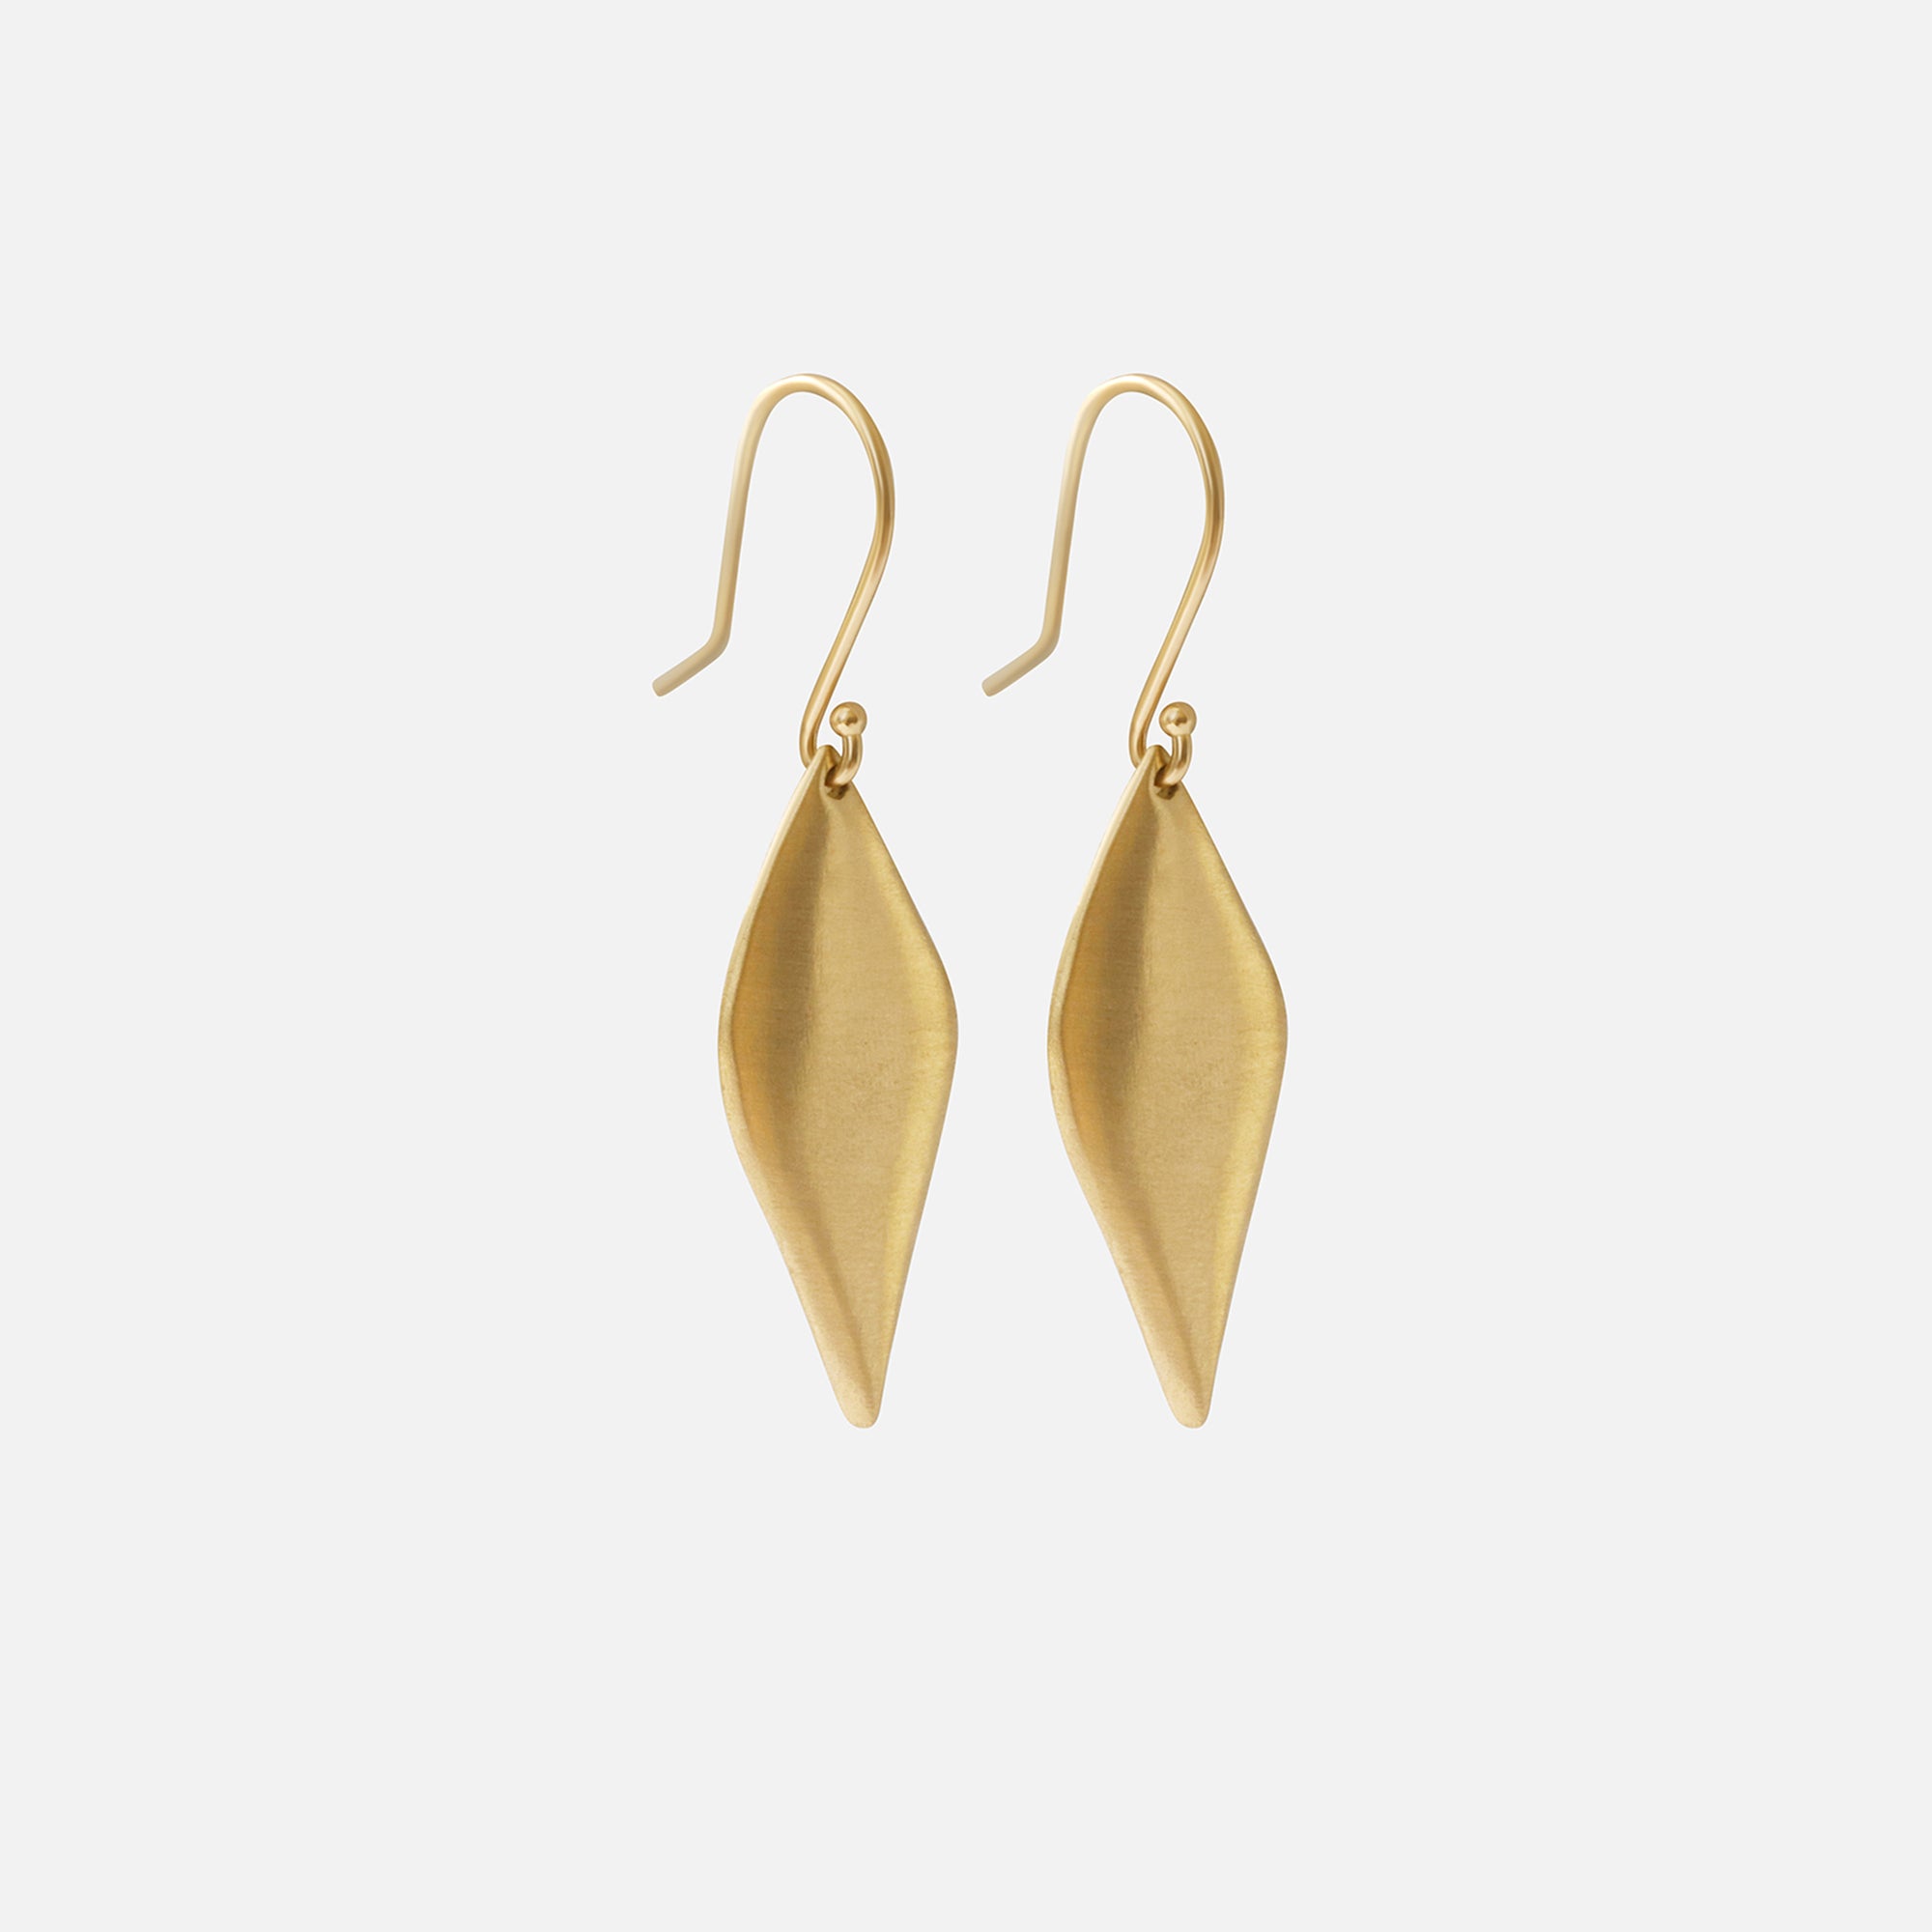 Leaf / Earrings By Tricia Kirkland in earrings Category